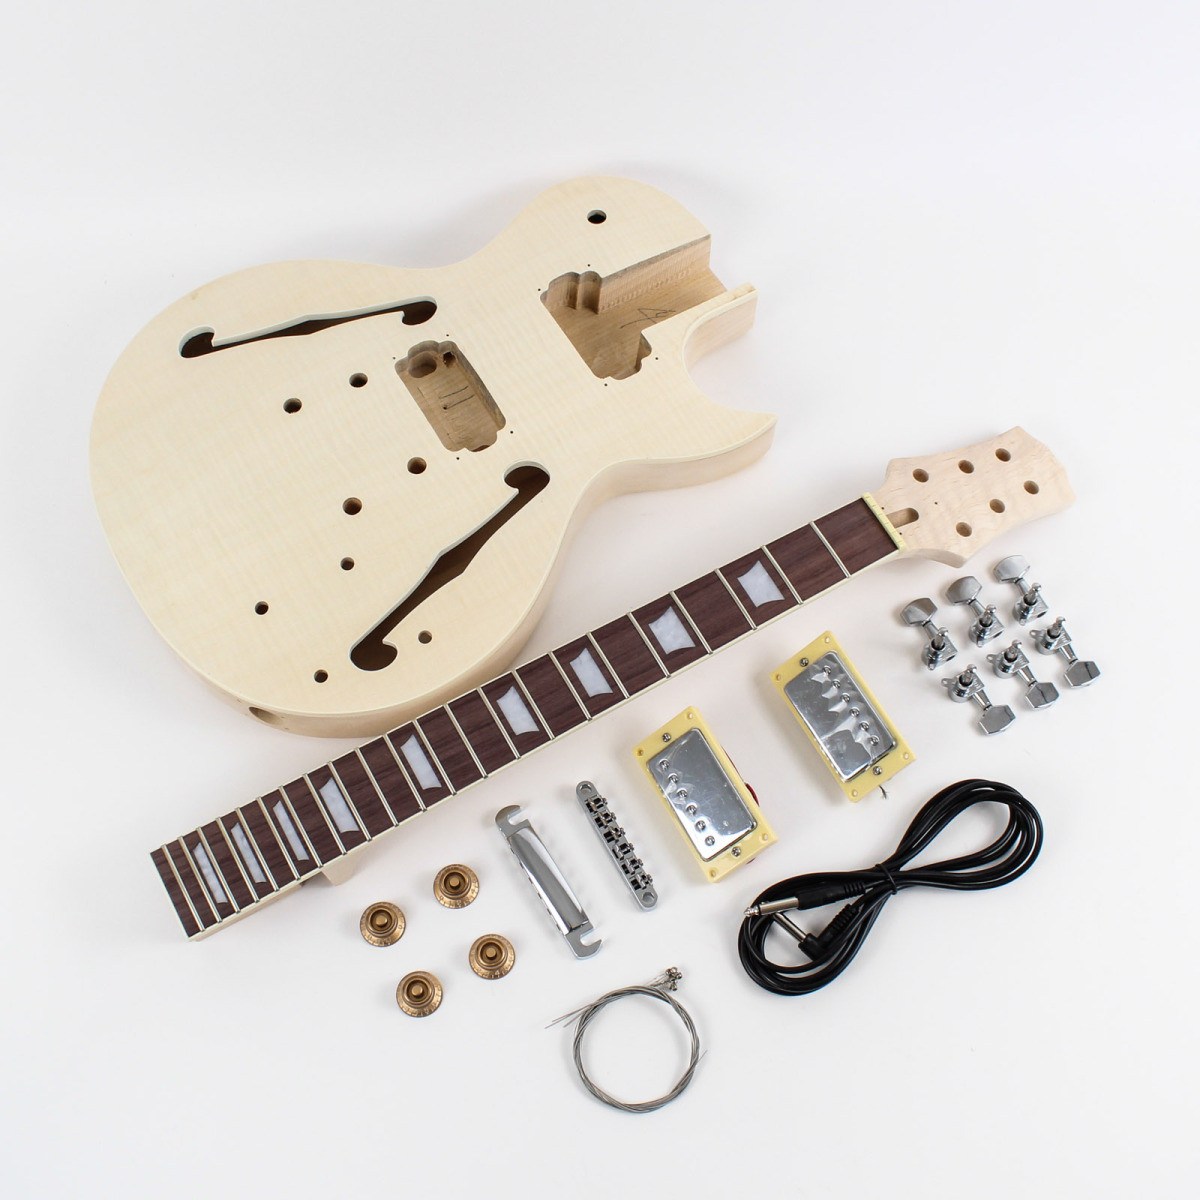 DIY Les Paul Kit
 Les Paul Semi Hollow Body DIY Guitar Kit DIY Guitars